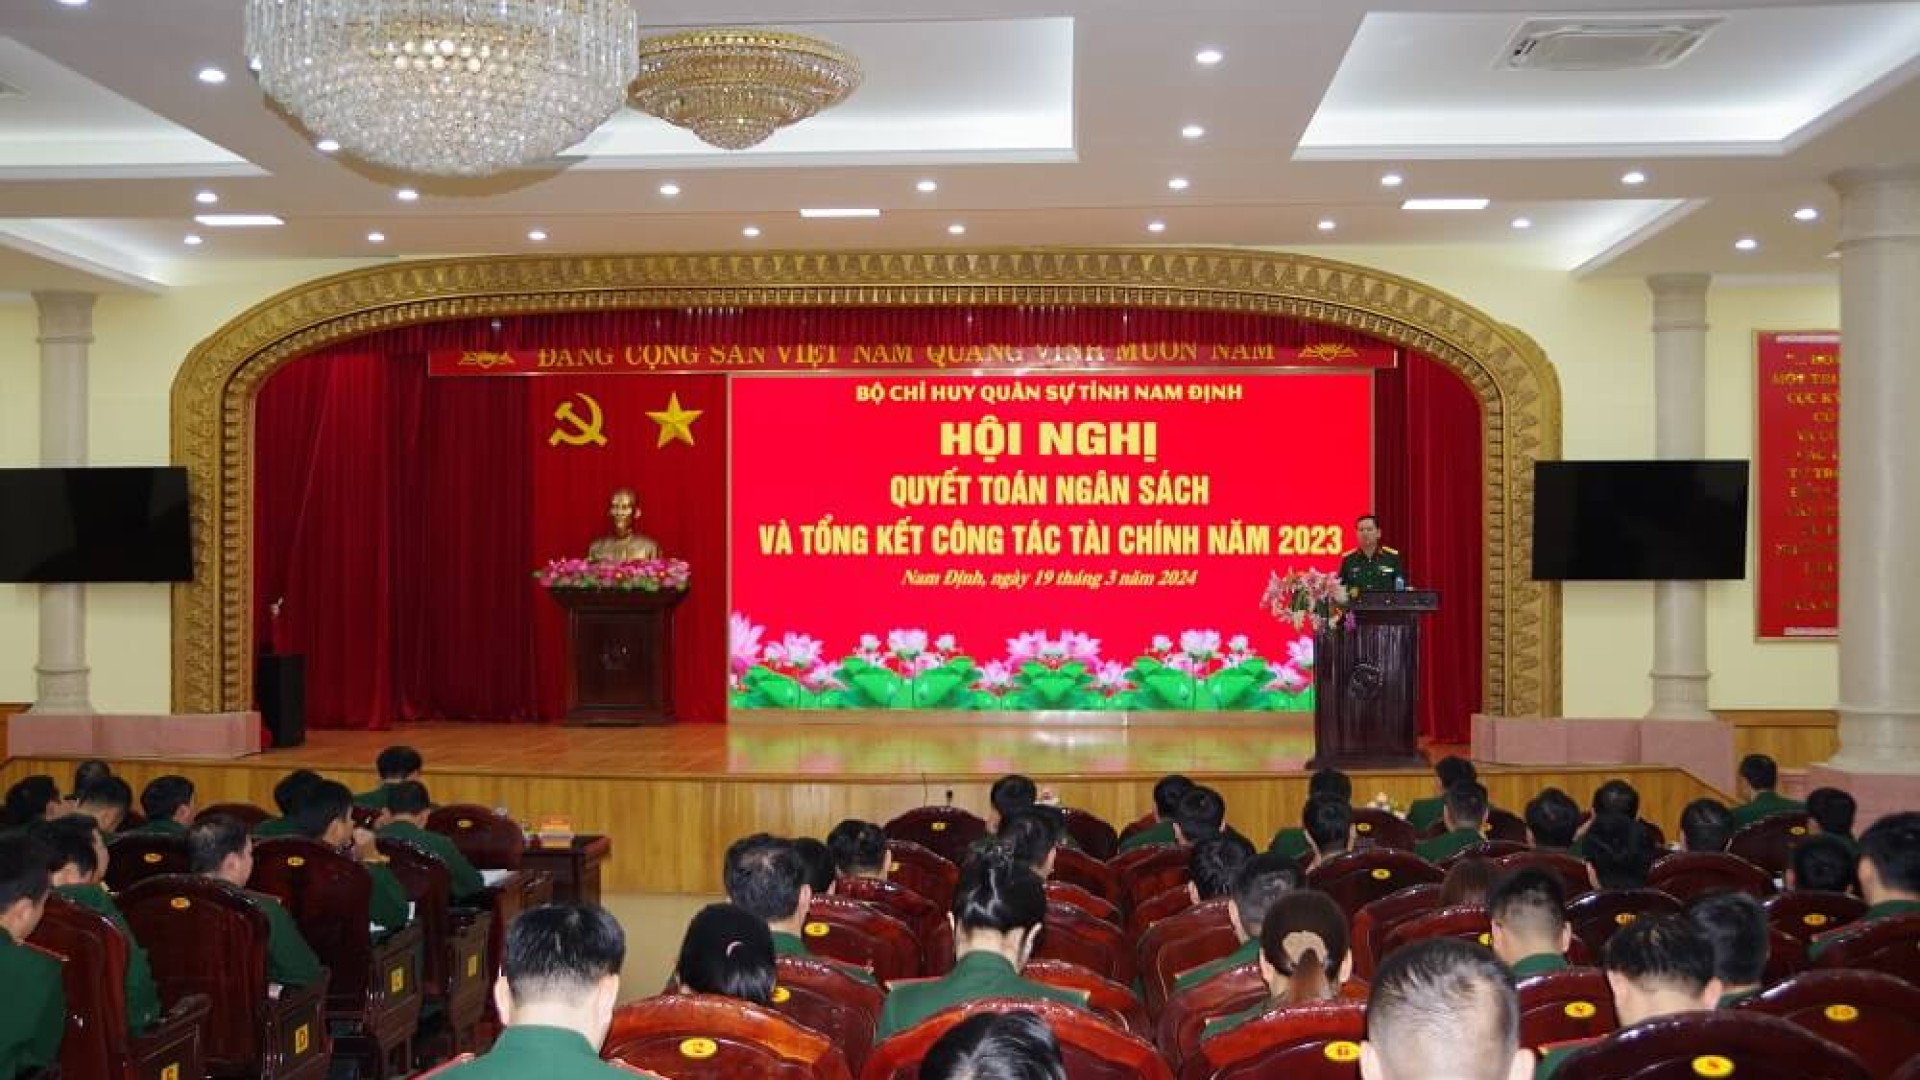 Bộ CHQS tỉnh Nam Định: Hội nghị quyết toán ngân sách và tổng kết công tác tài chính năm 2023